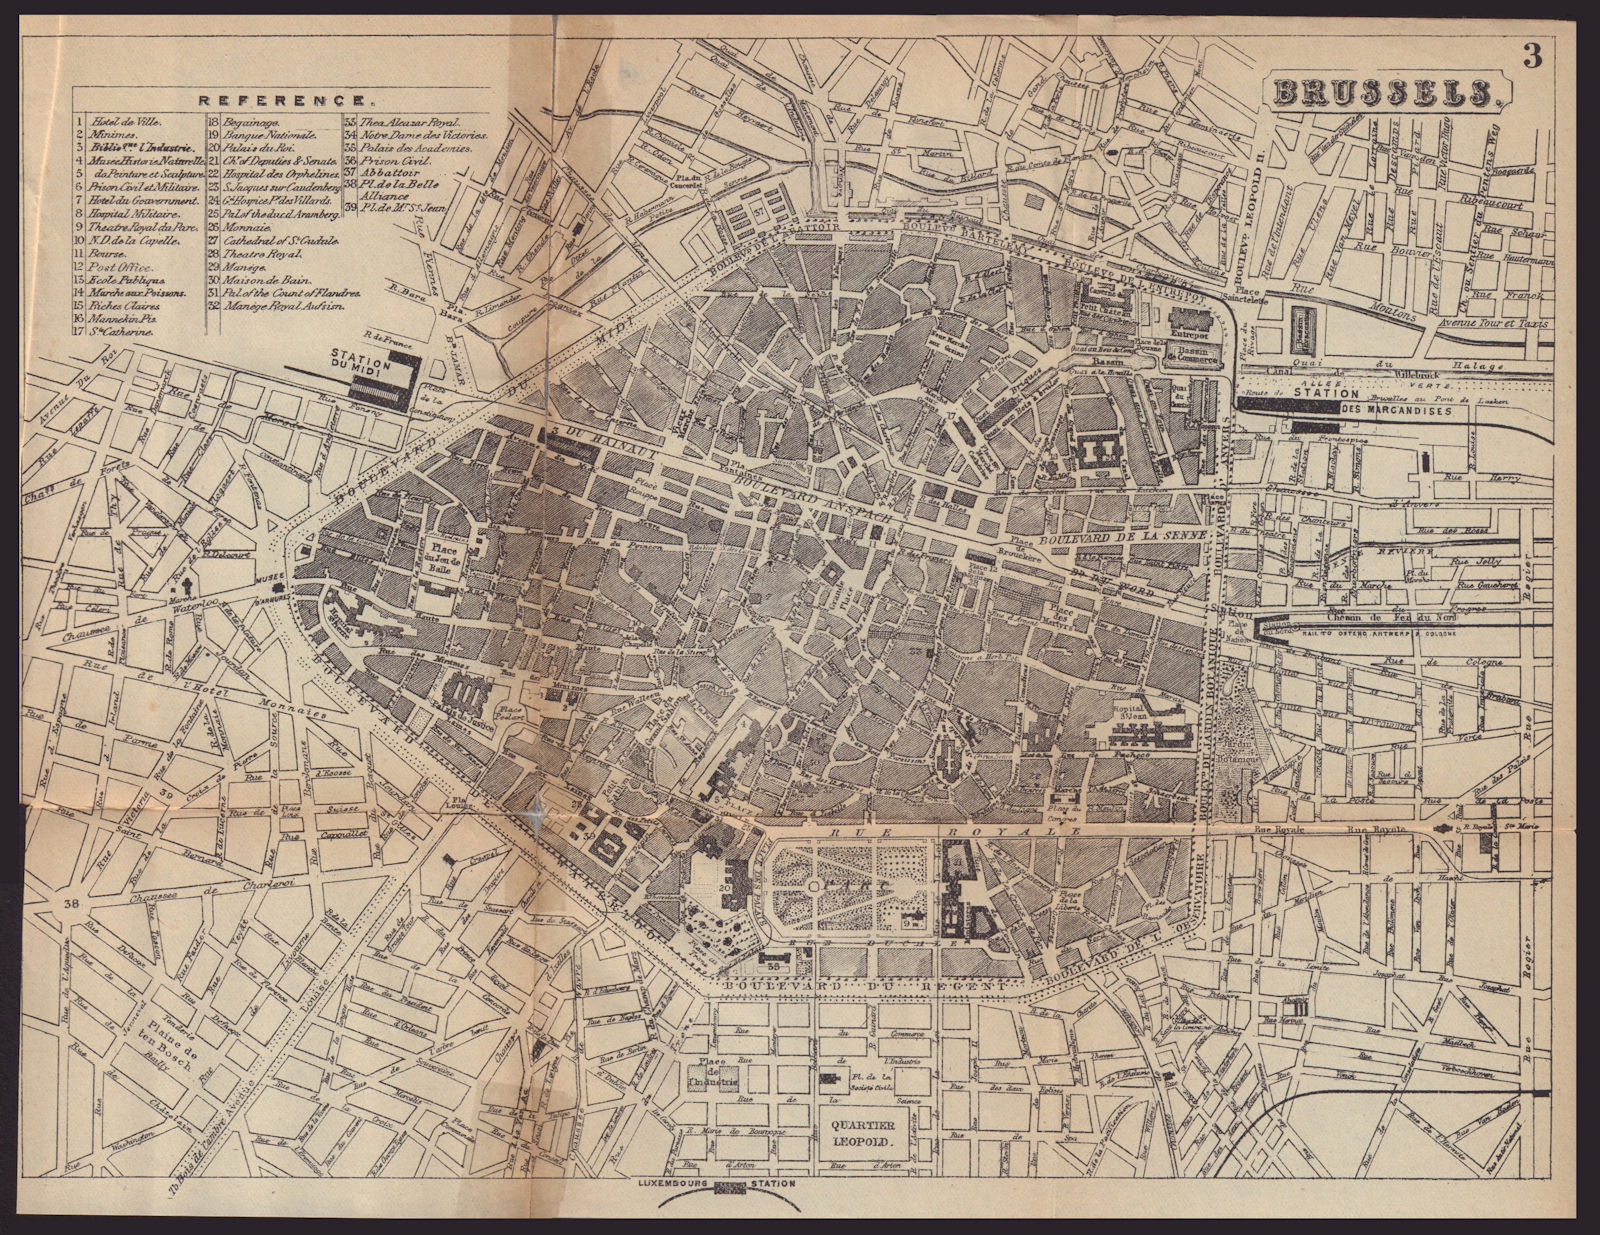 Associate Product BRUSSELS BRUSSEL BRUXELLES antique town plan city map. Belgium. BRADSHAW c1898